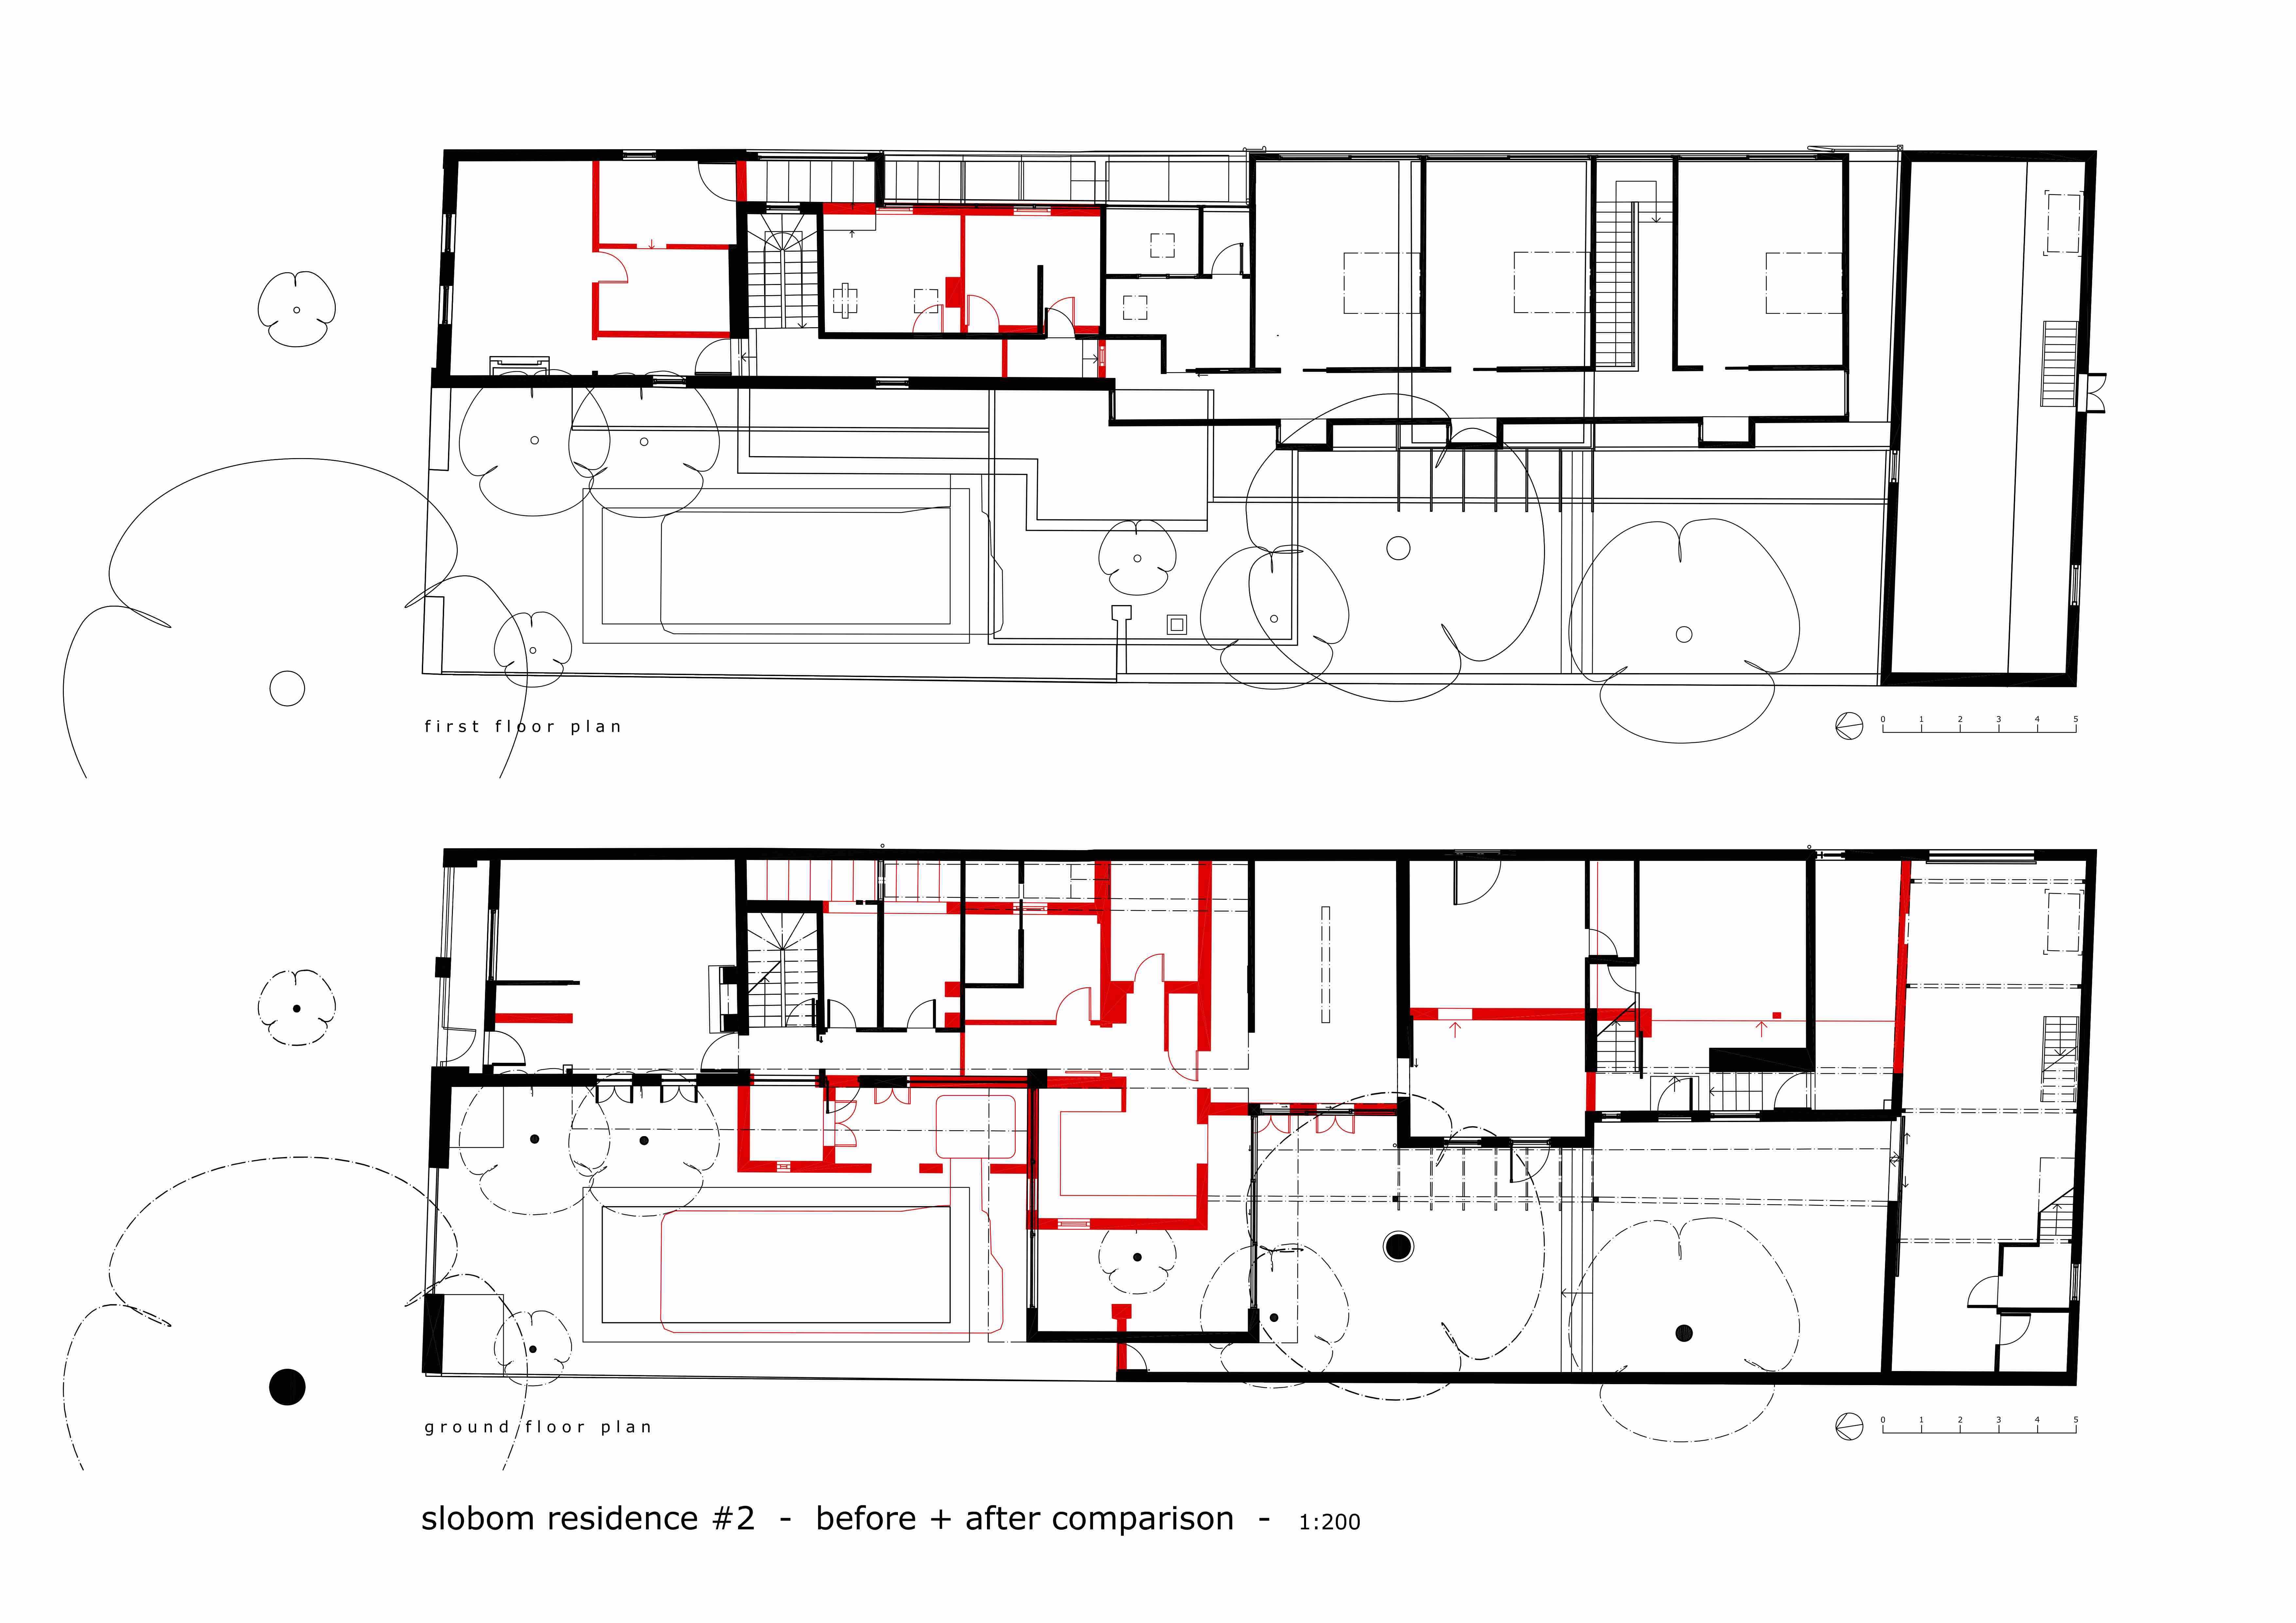 Slobom Residence #2_plans 4_before+after comparison 1_Stephen Varady Image ©